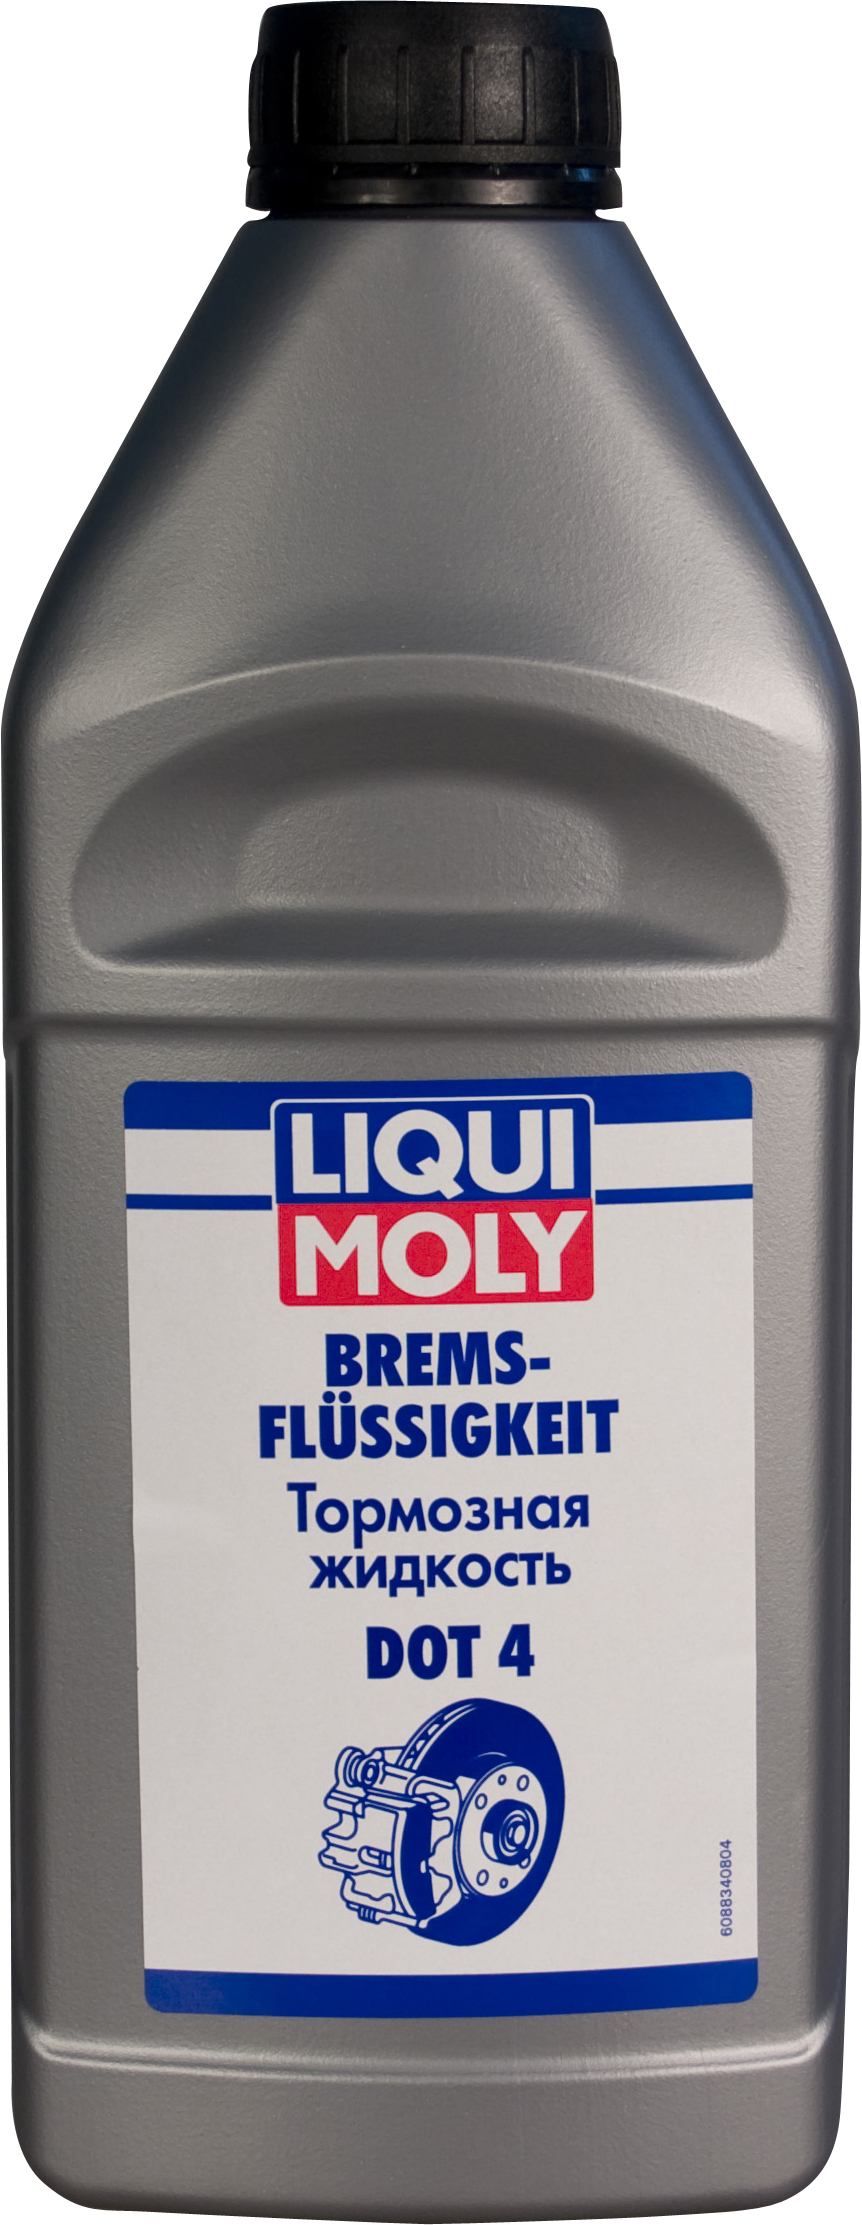 Купить запчасть LIQUI MOLY - 8834 Тормозная жидкость dot 4, "BRAKE FLUID", 1л